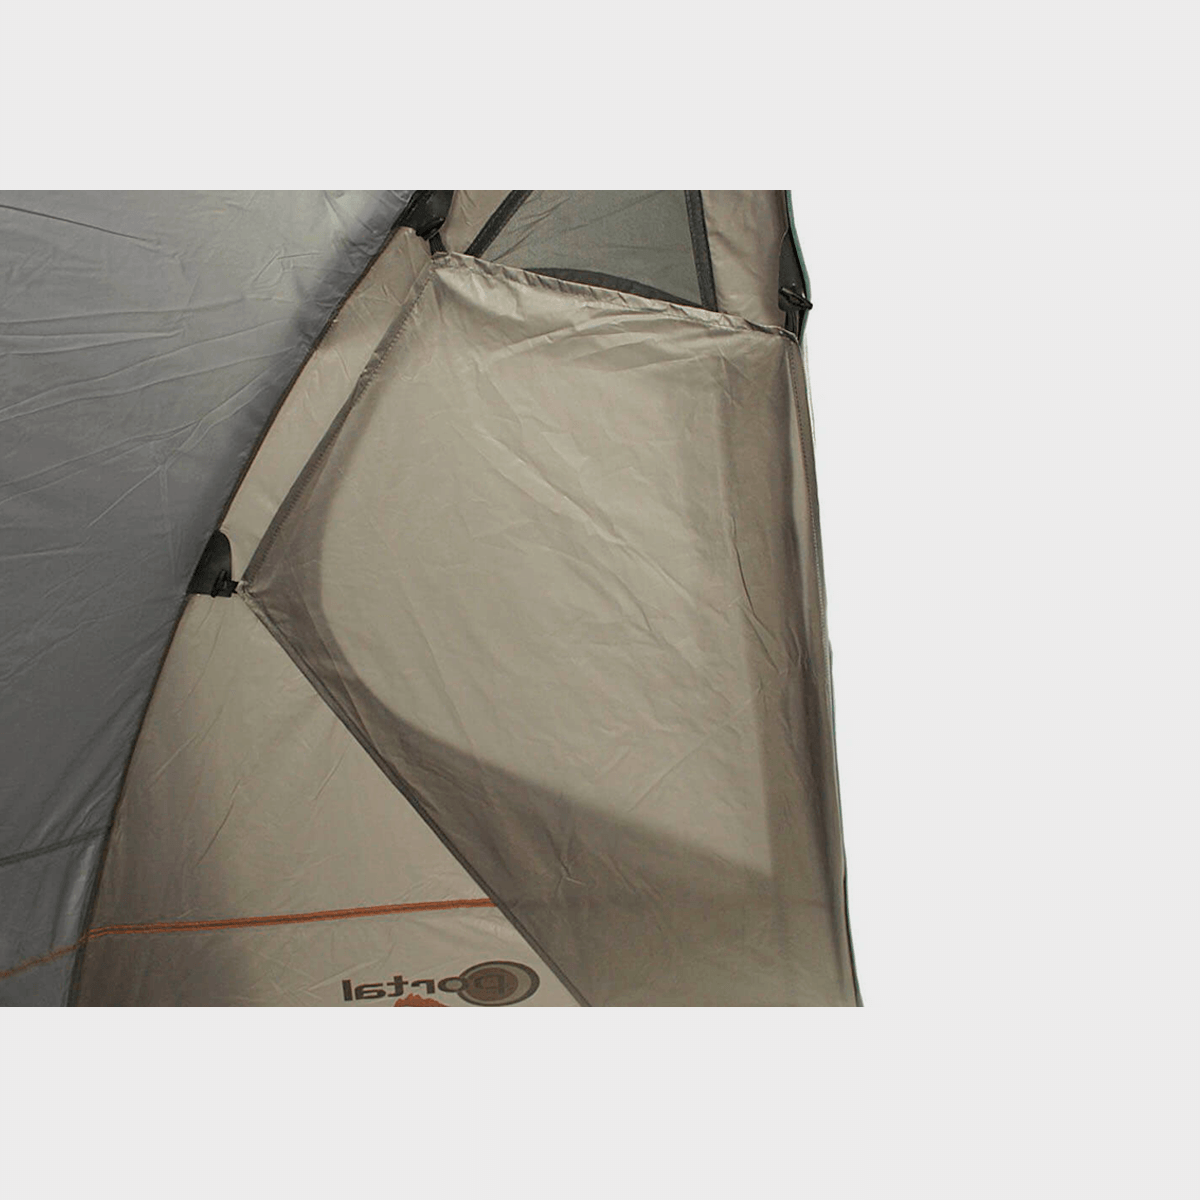 Alfa Air Tent - Portal Outdoor UK